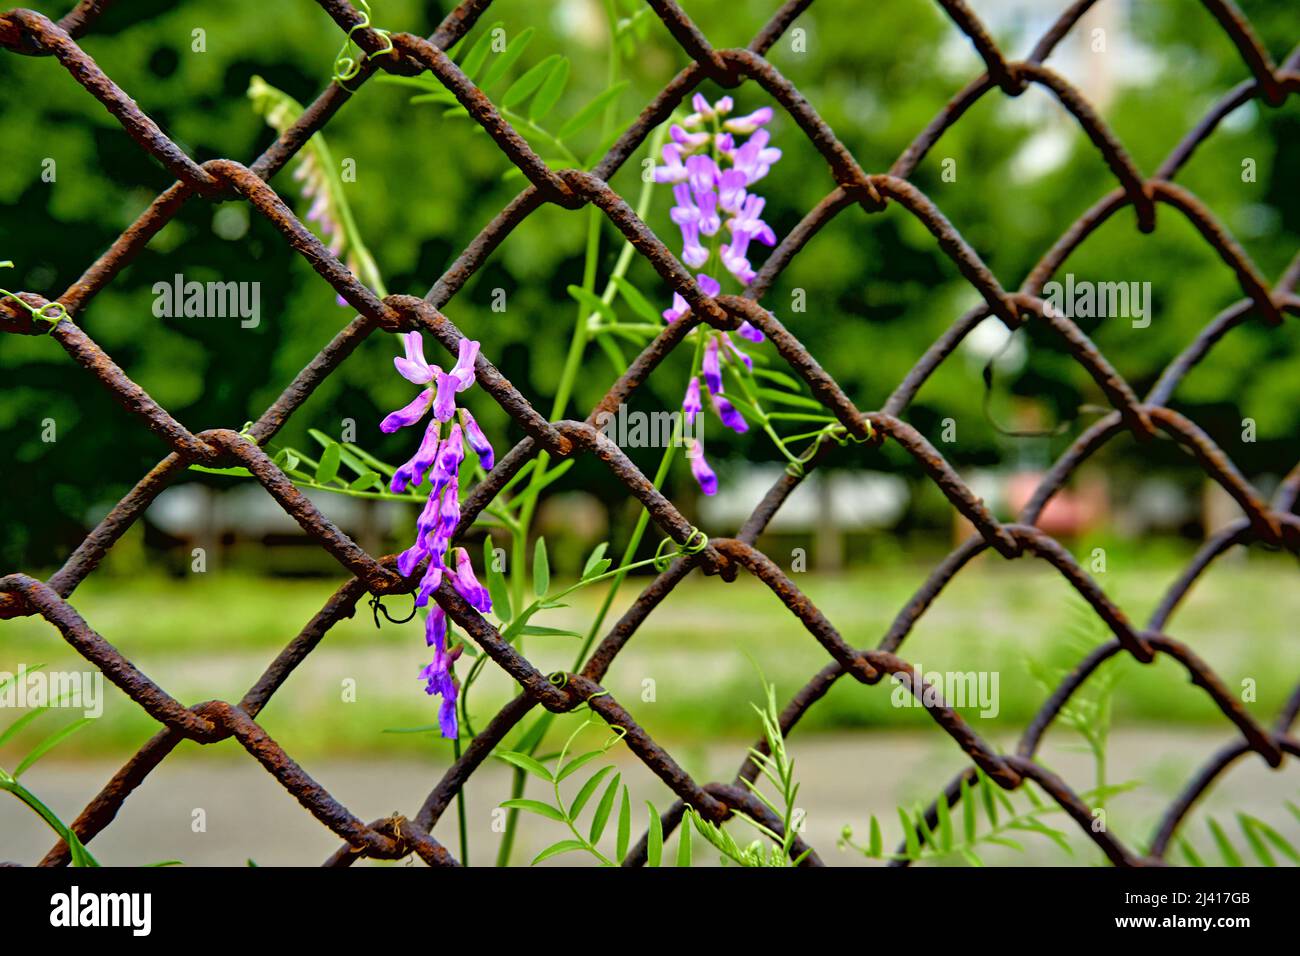 Rusty iron mesh grating and purplish flowers Stock Photo